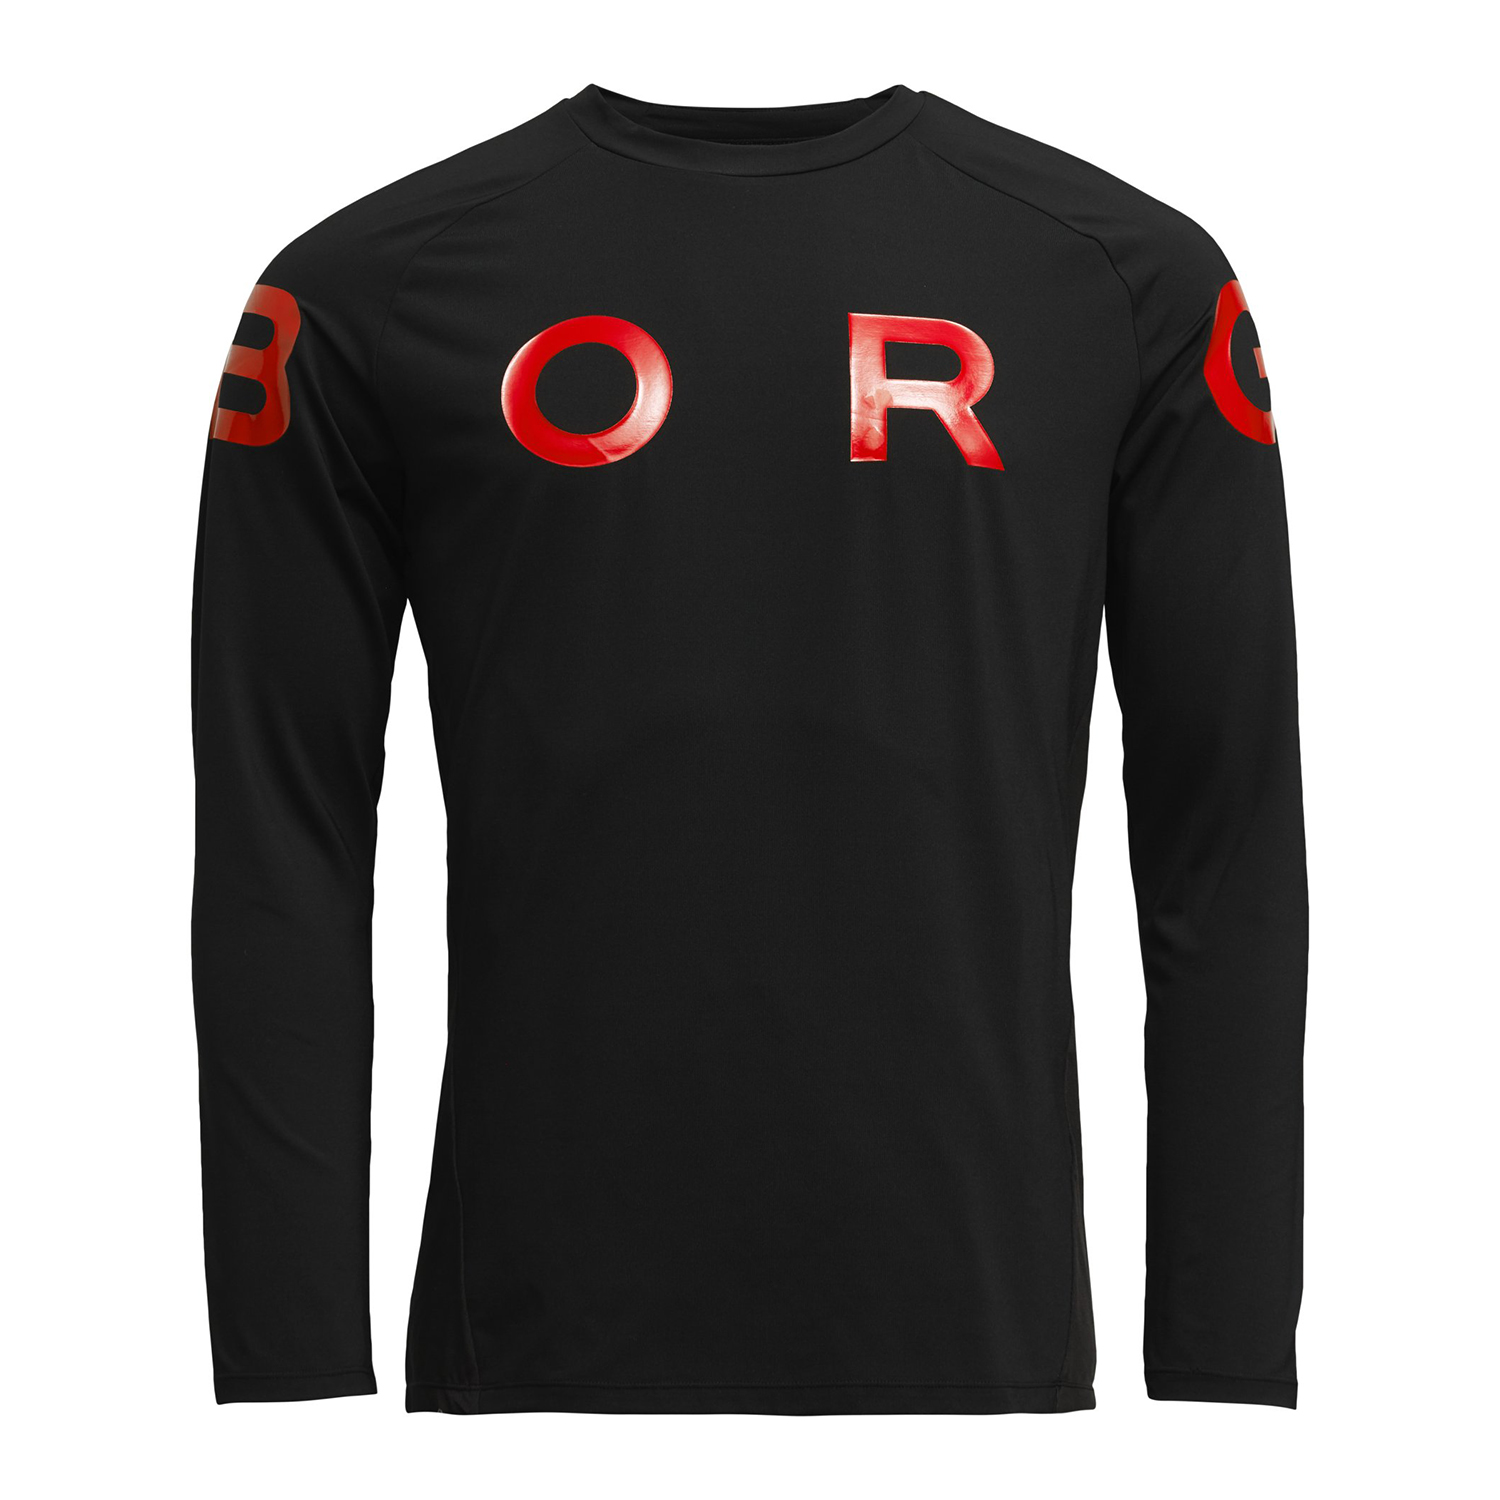 BJORN BORG Ανδρική αθλητική μπλούζα BJORN BORG μαύρη κόκκινη